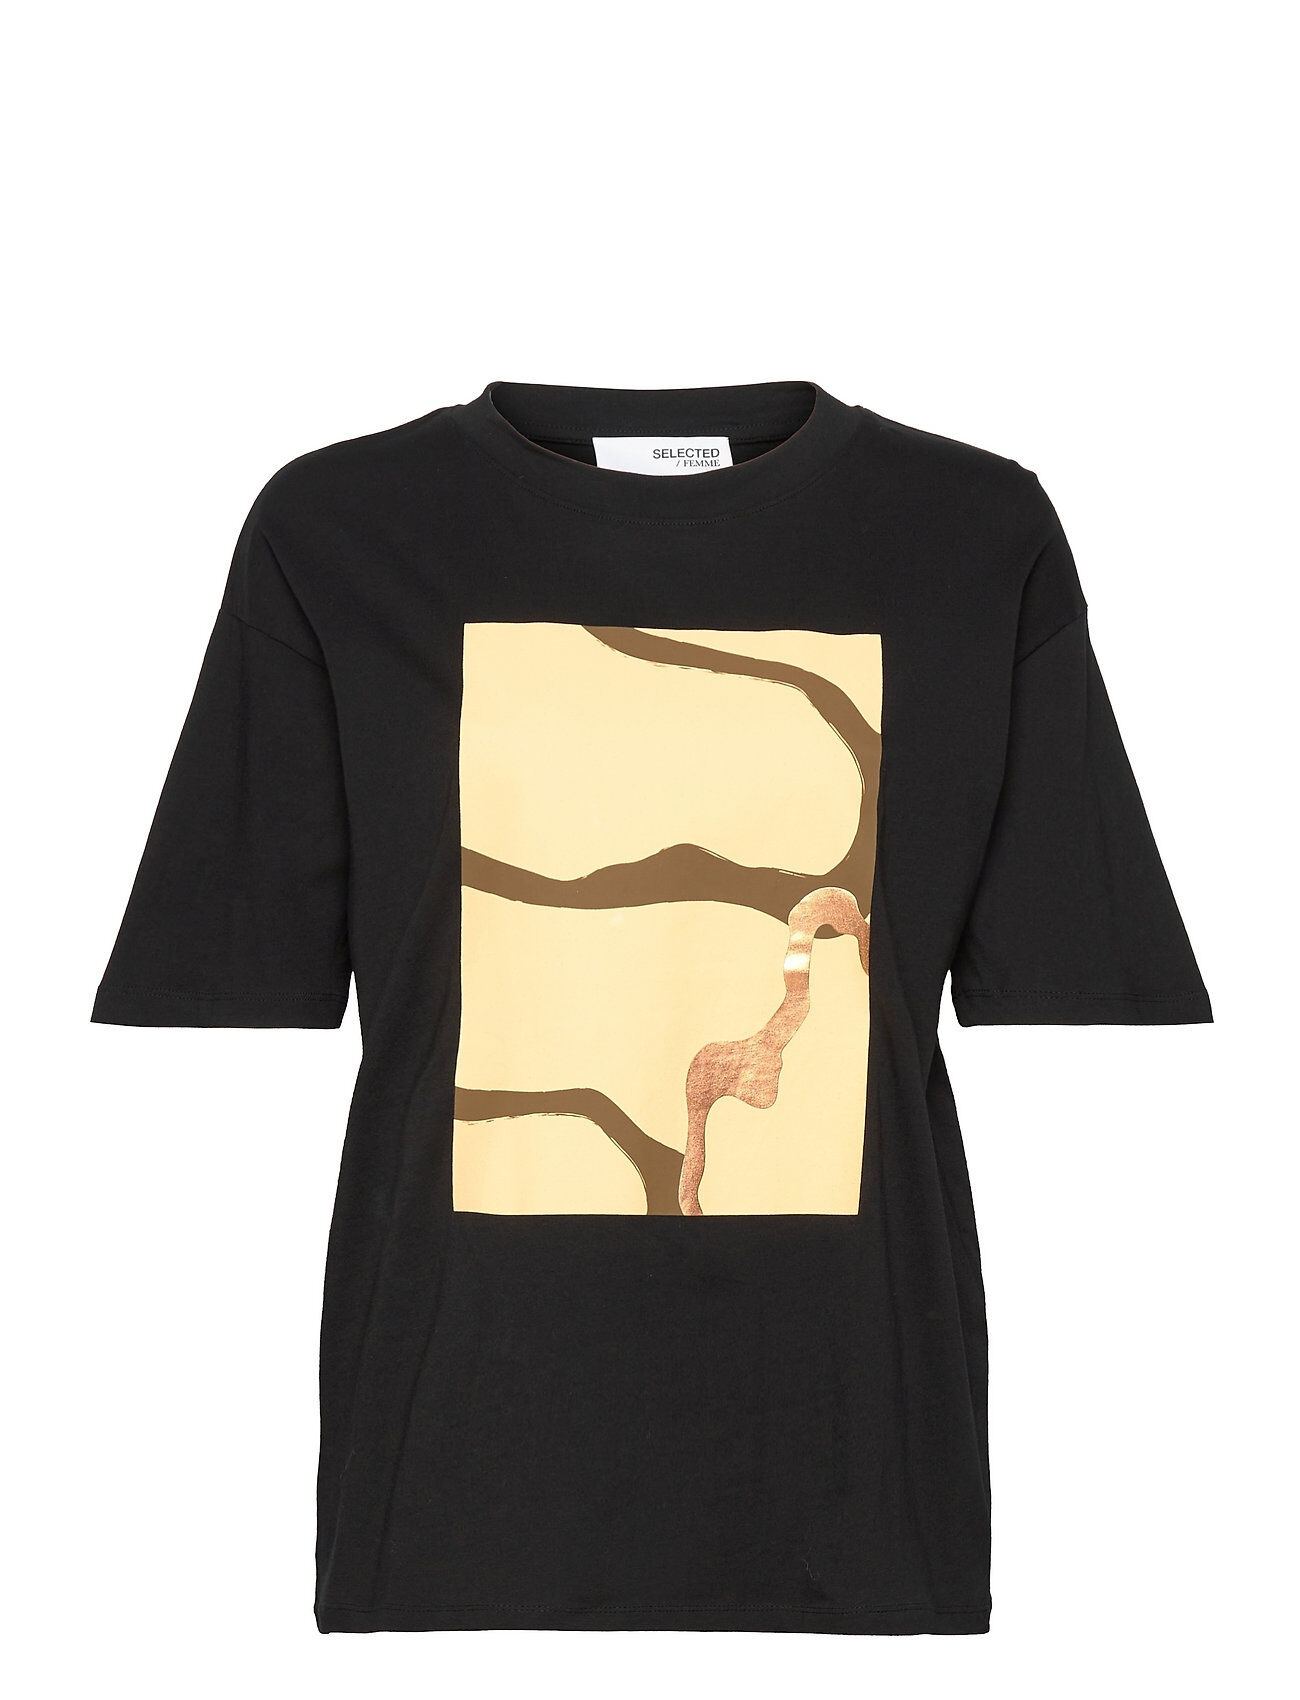 Selected Femme Slfmiralda 2/4 Printed Tee M T-shirts & Tops Short-sleeved Svart Selected Femme